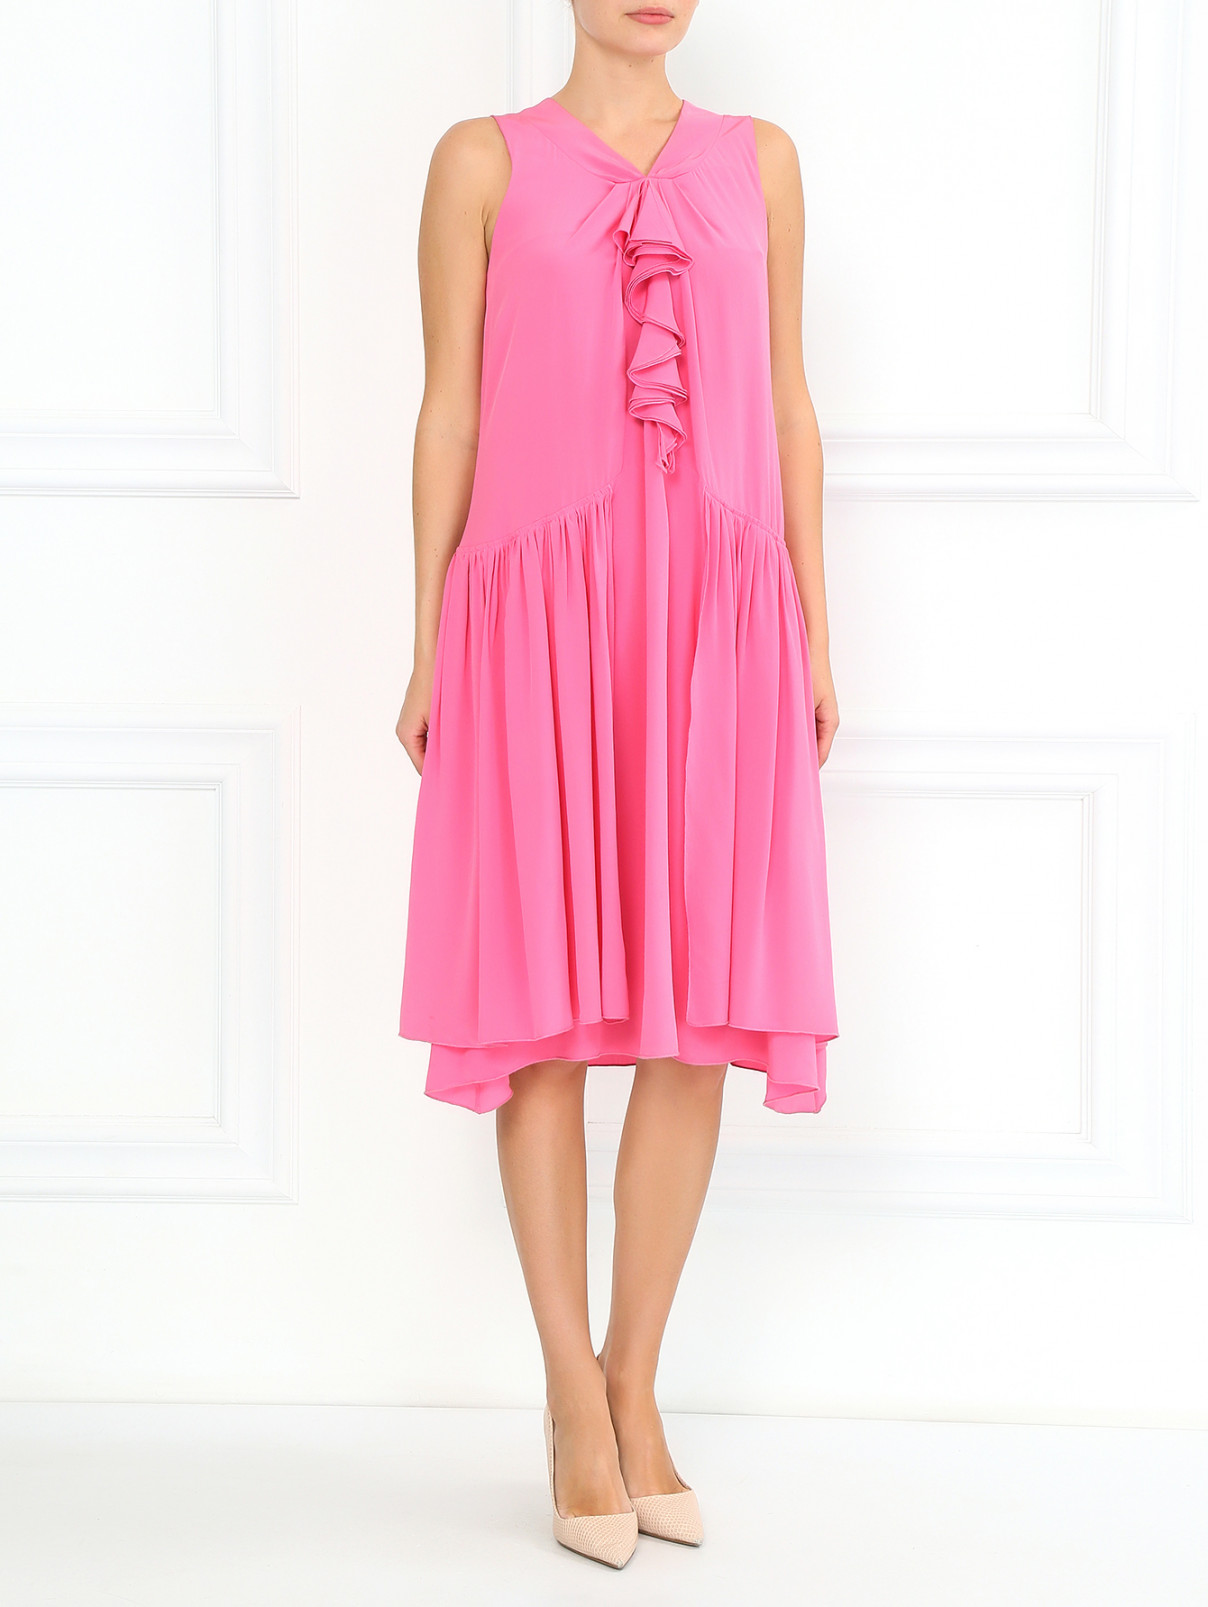 Свободное платье из шелка с воланом Antonio Marras  –  Модель Общий вид  – Цвет:  Розовый